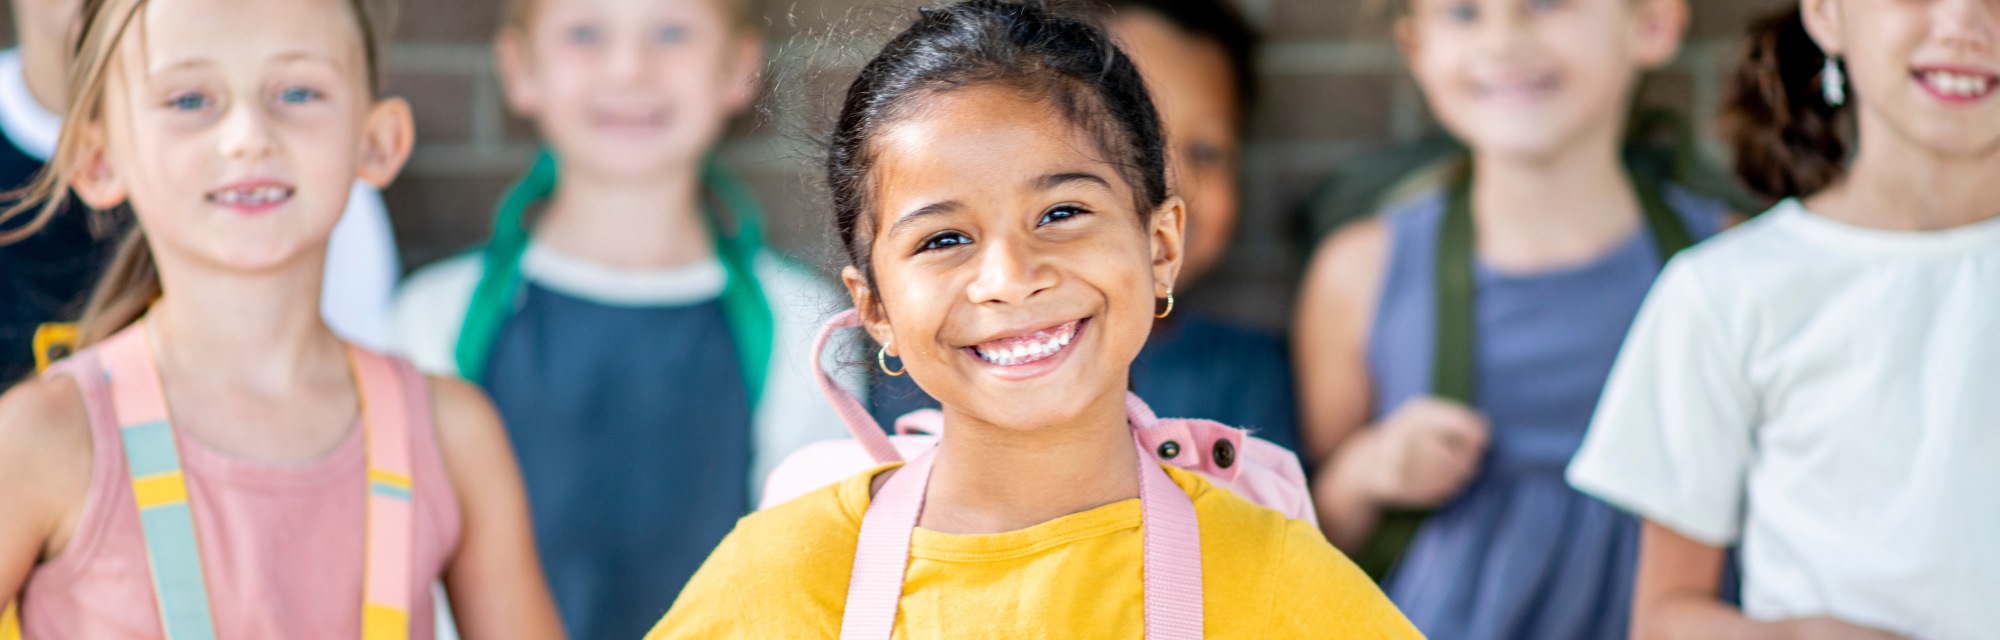 Imagen de portada del curso "Variables que influyen en el aprendizaje: ¿cómo lograr experiencias significativas en los alumnos rediseñando los espacios, tiempos y recursos?" - Se visualiza una Chica sonriendo, mirando hacia el frente y sus compañeros en el fondo, sonriendo también.